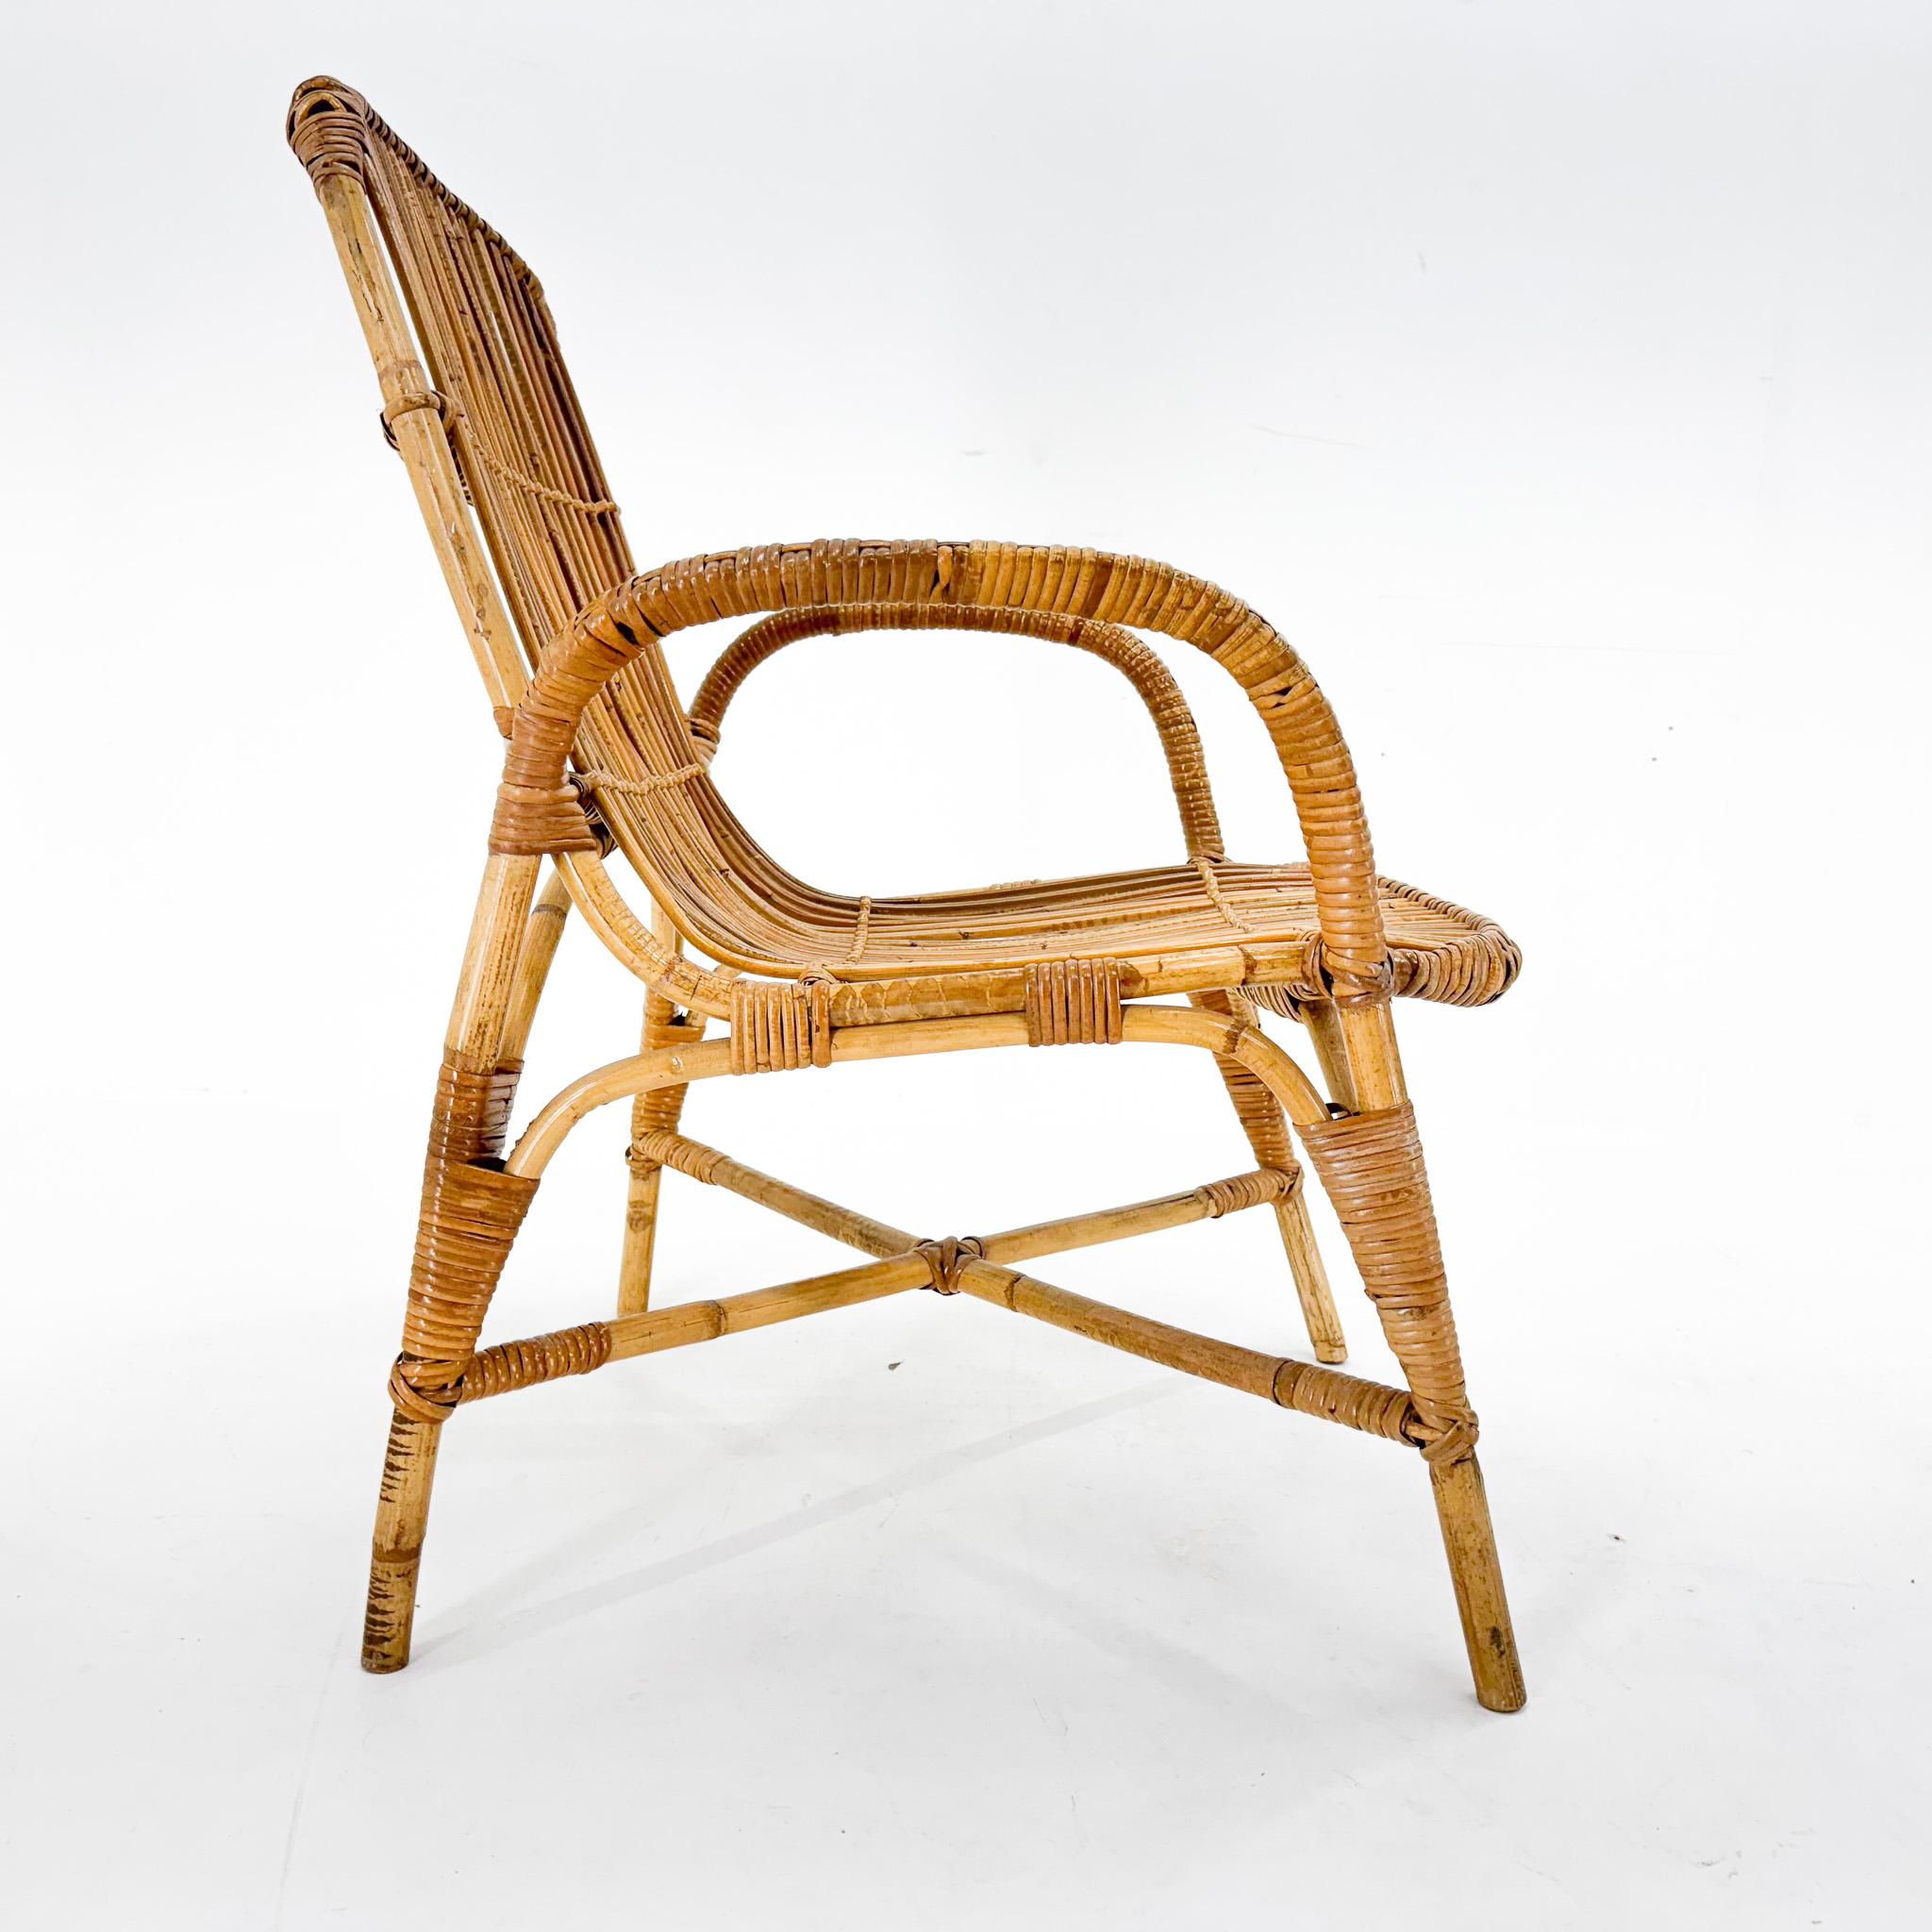 Fauteuil chaise vintage en rotin fabriqué dans les années 1970. Bon état vintage avec de légers signes d'utilisation (voir photo).